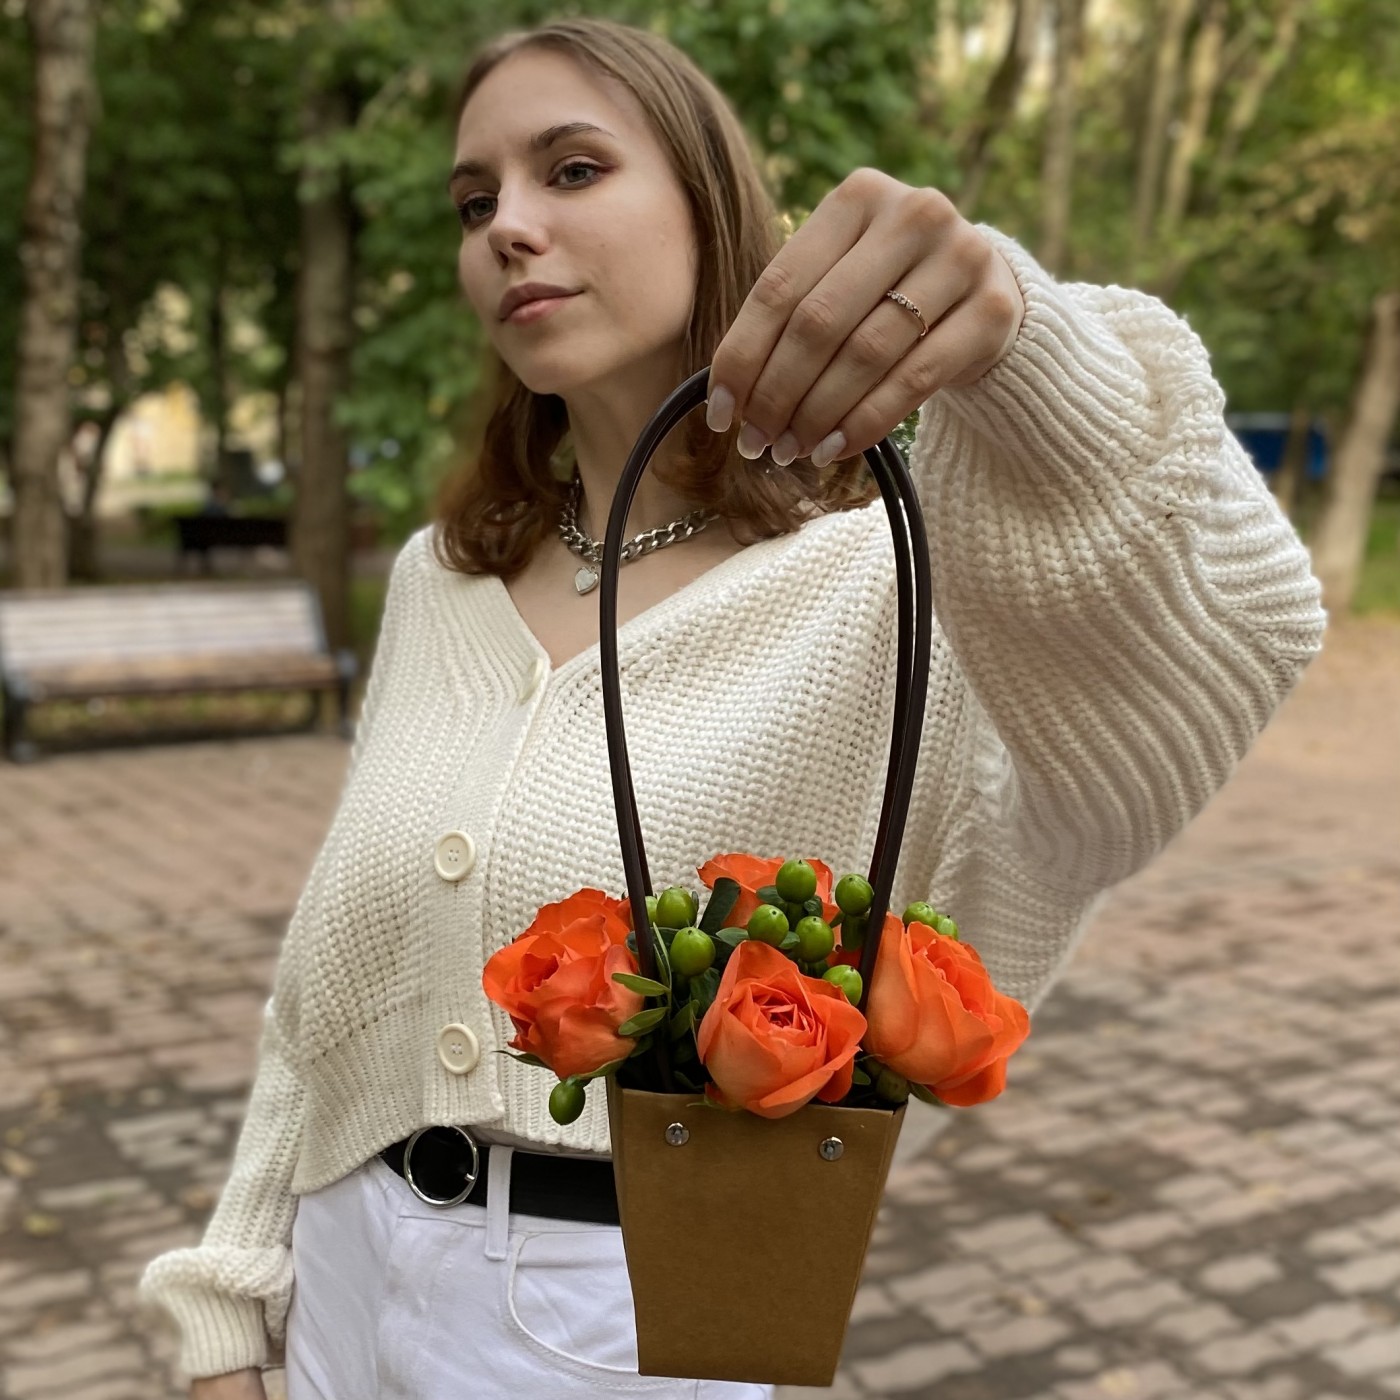 7 оранжевых роз в сумочке